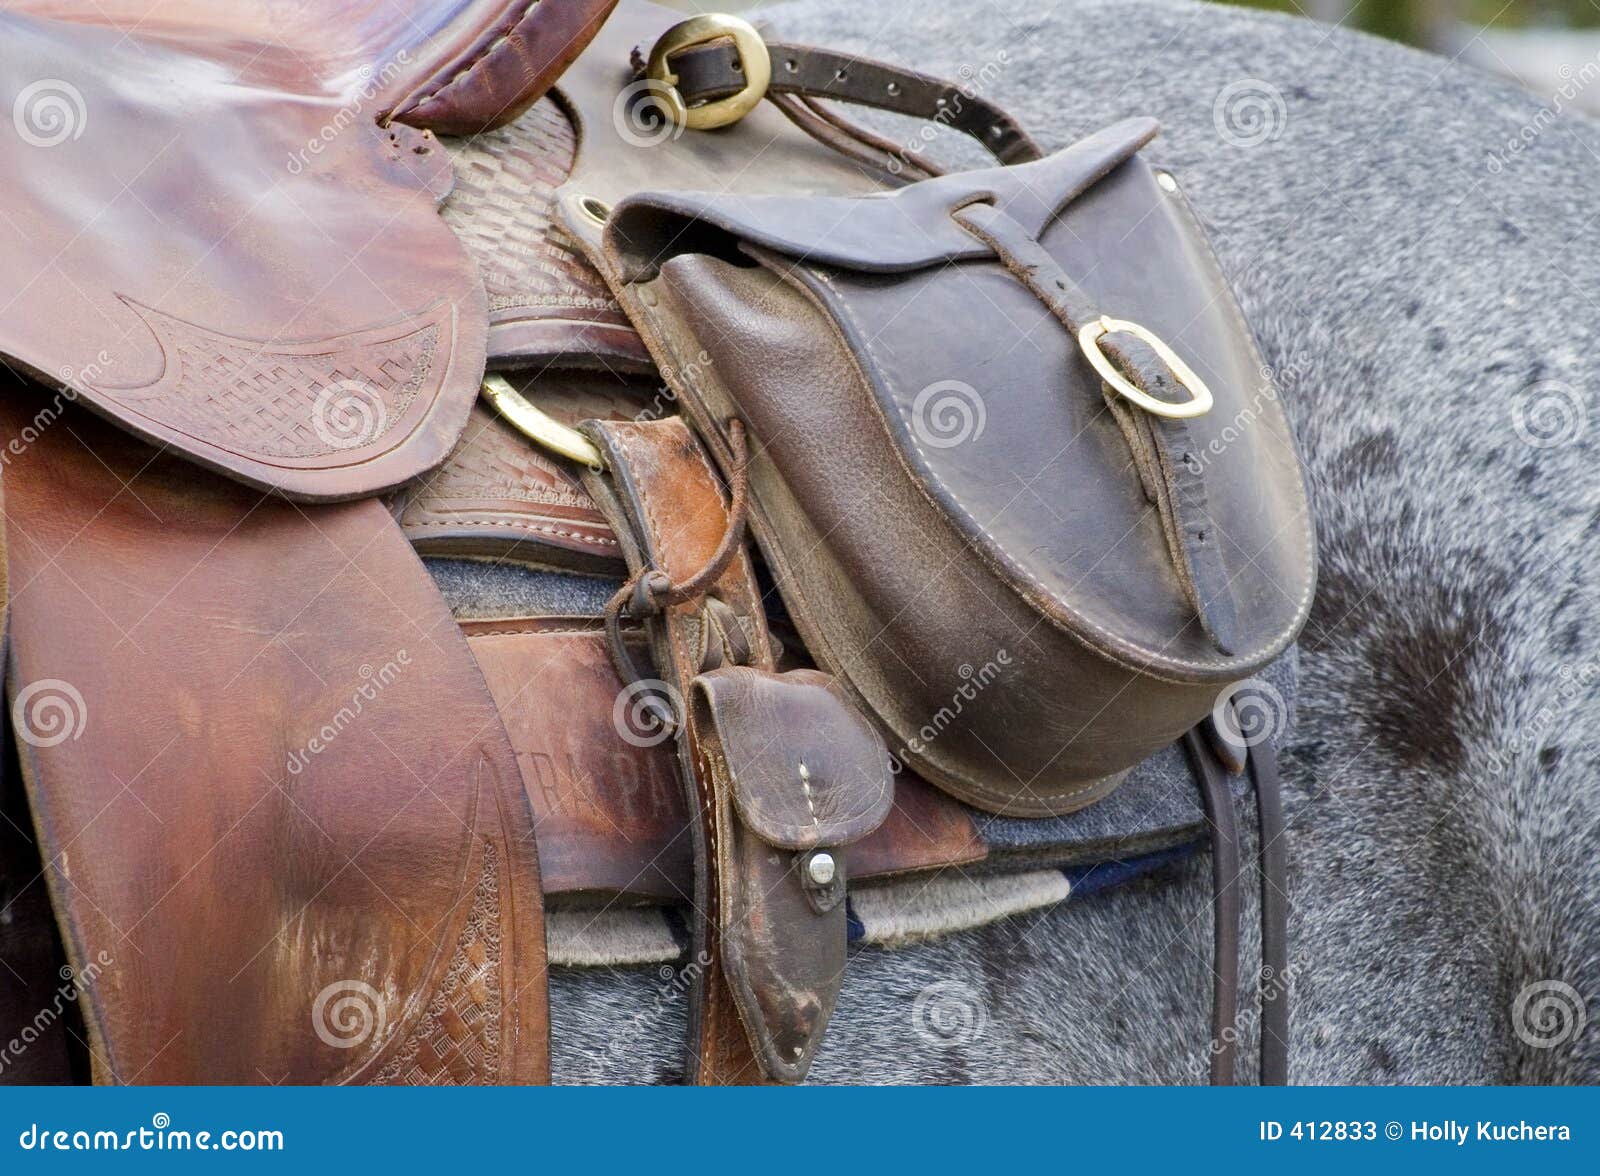 saddle bag on horse